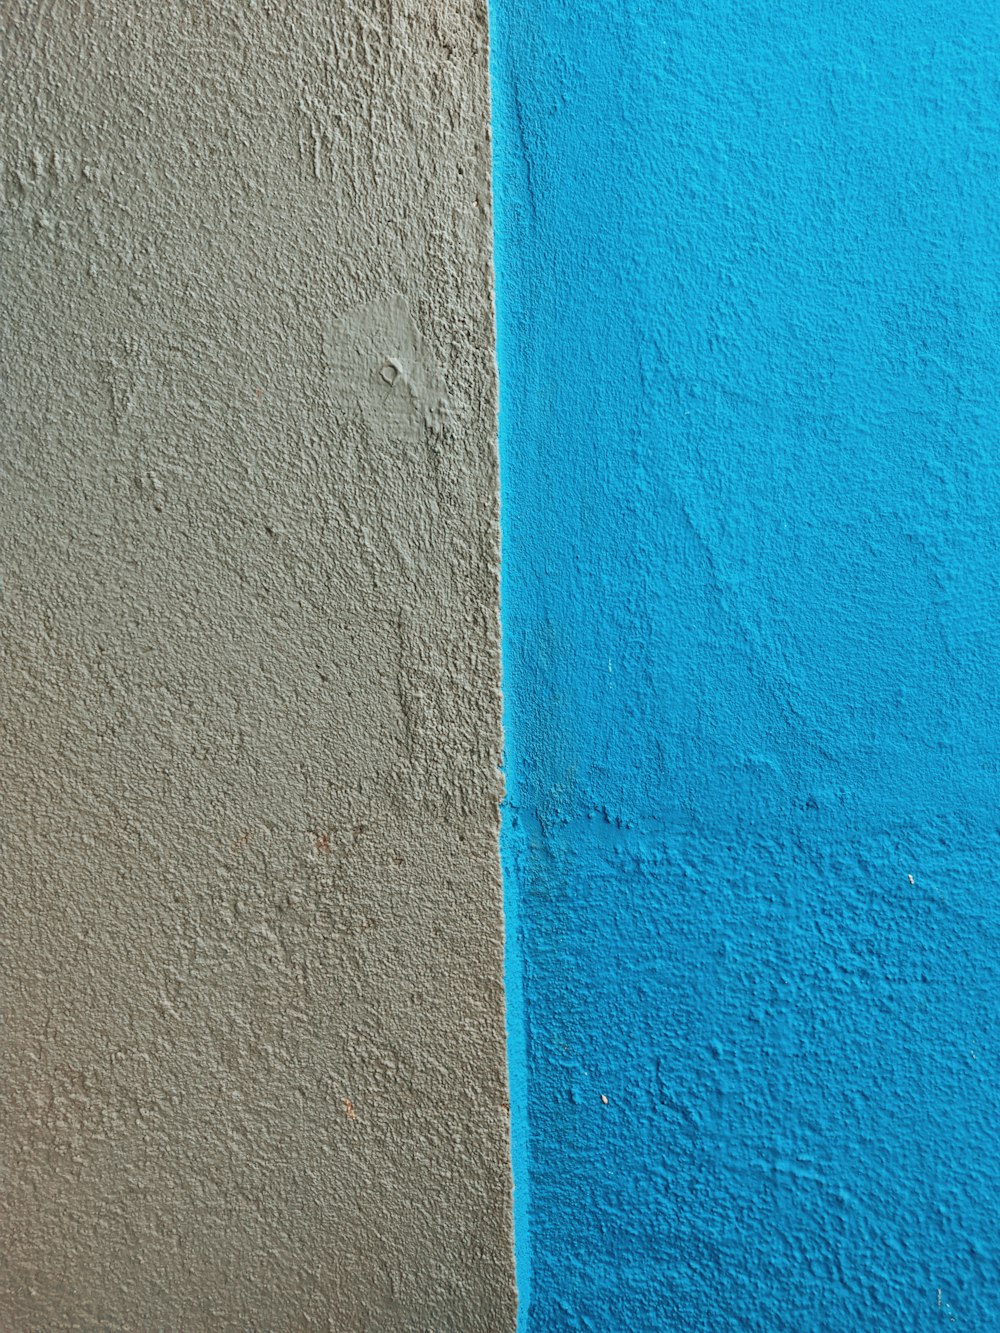 青とオレンジに塗られた壁